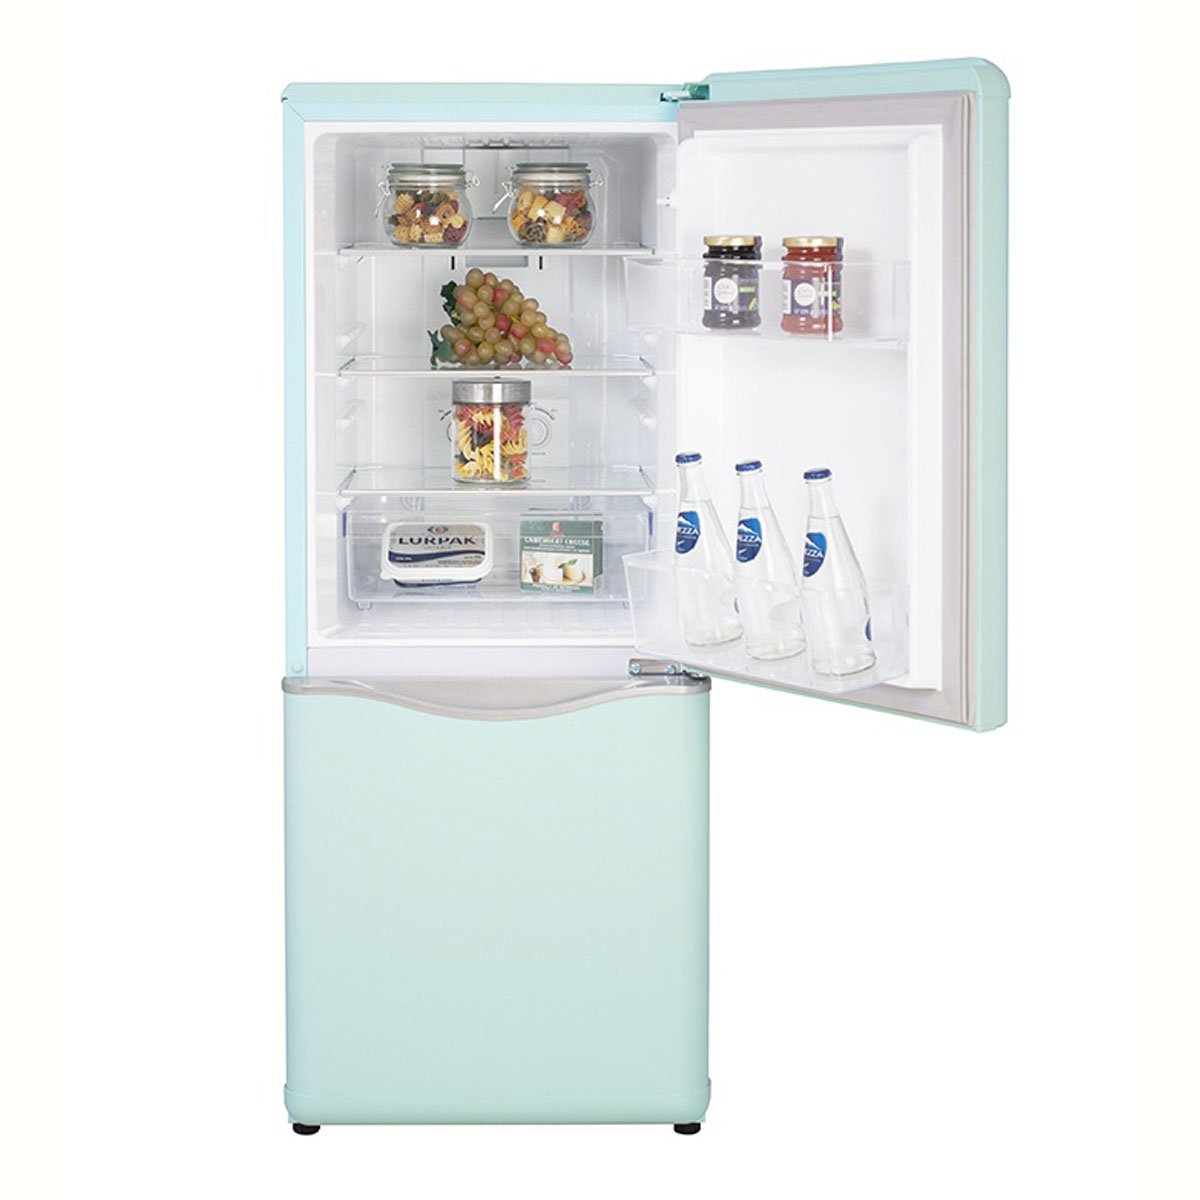 Refrigerador Daewoo Bottom Mount 5 Pies Menta con Acabados en Cromo